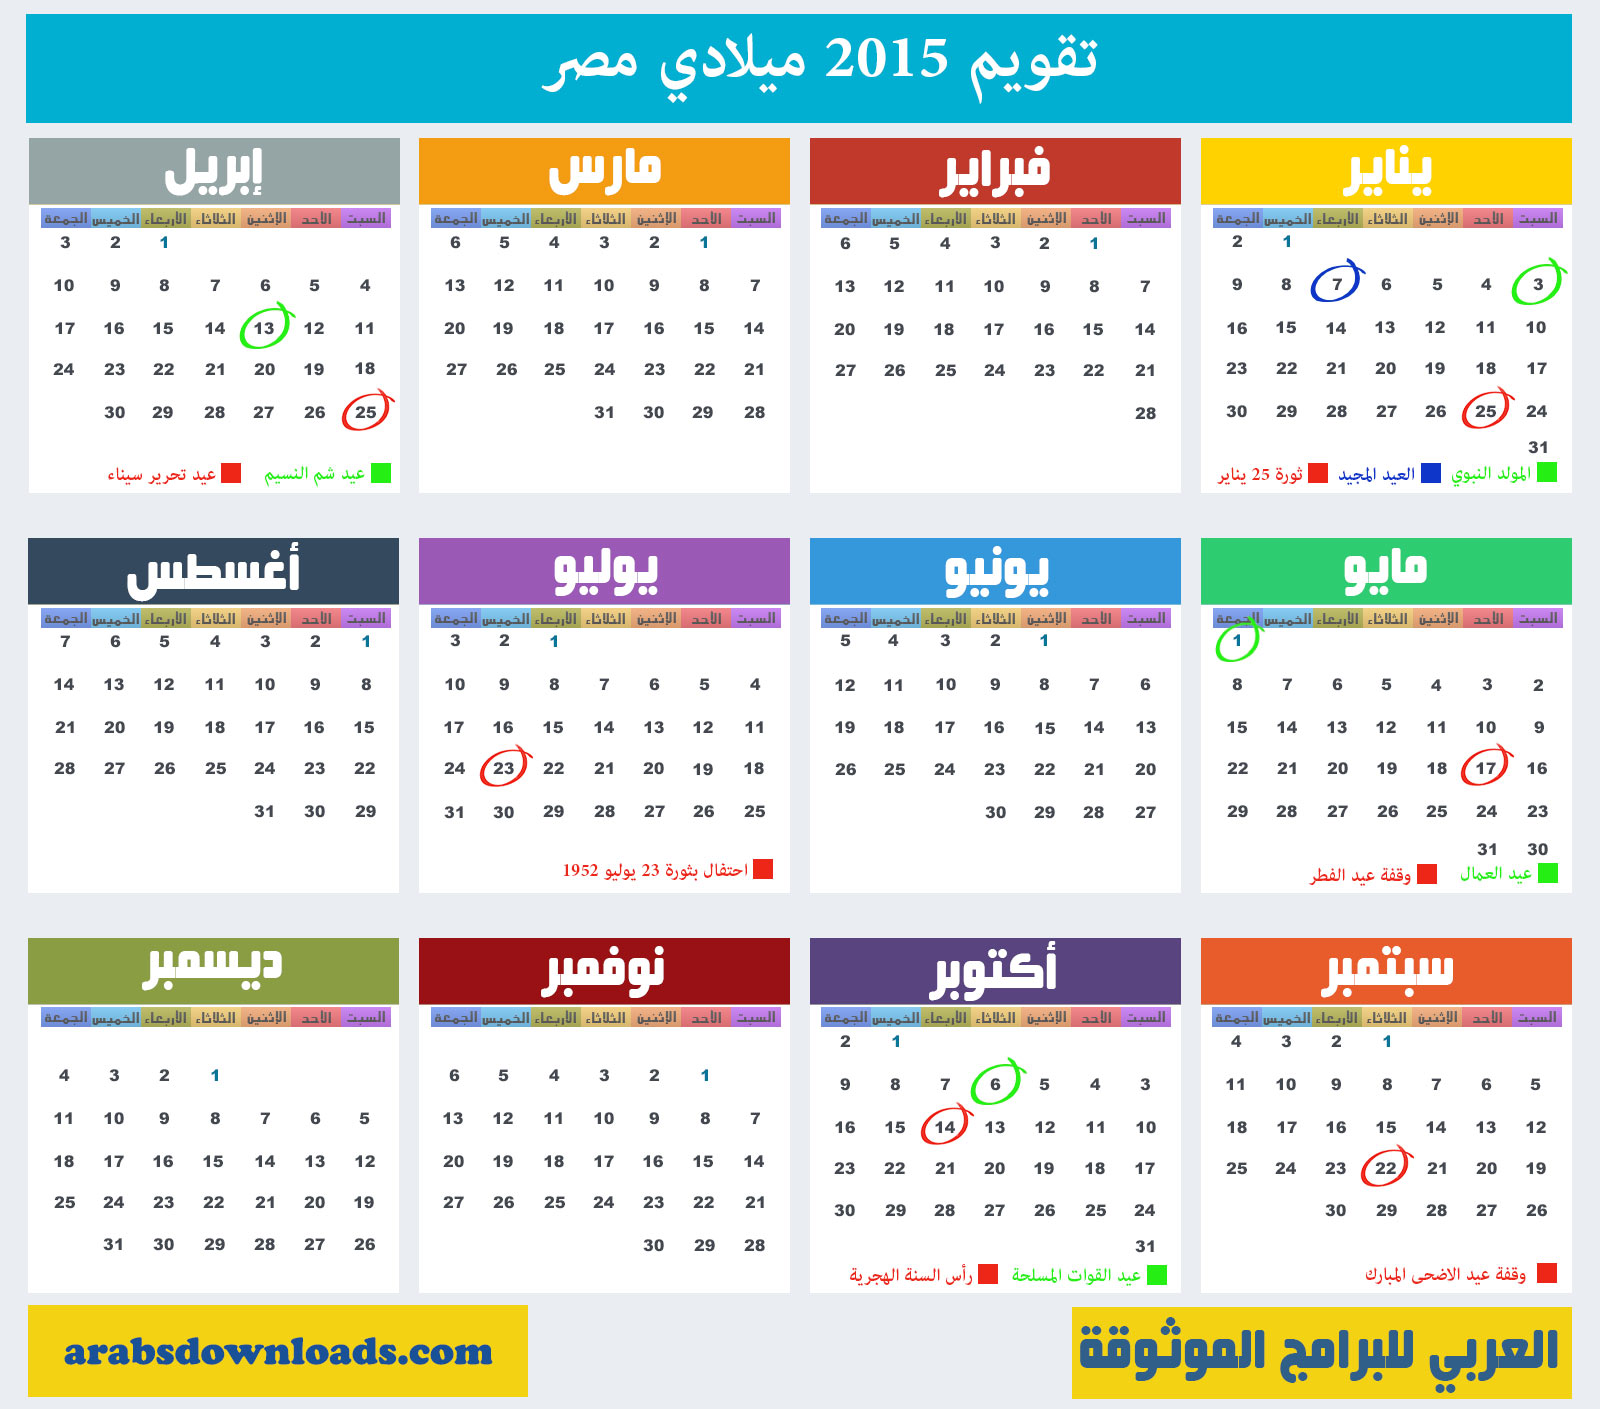 تحميل التقويم Calendar Egypt 2015 مصر صور مع الاجازات 